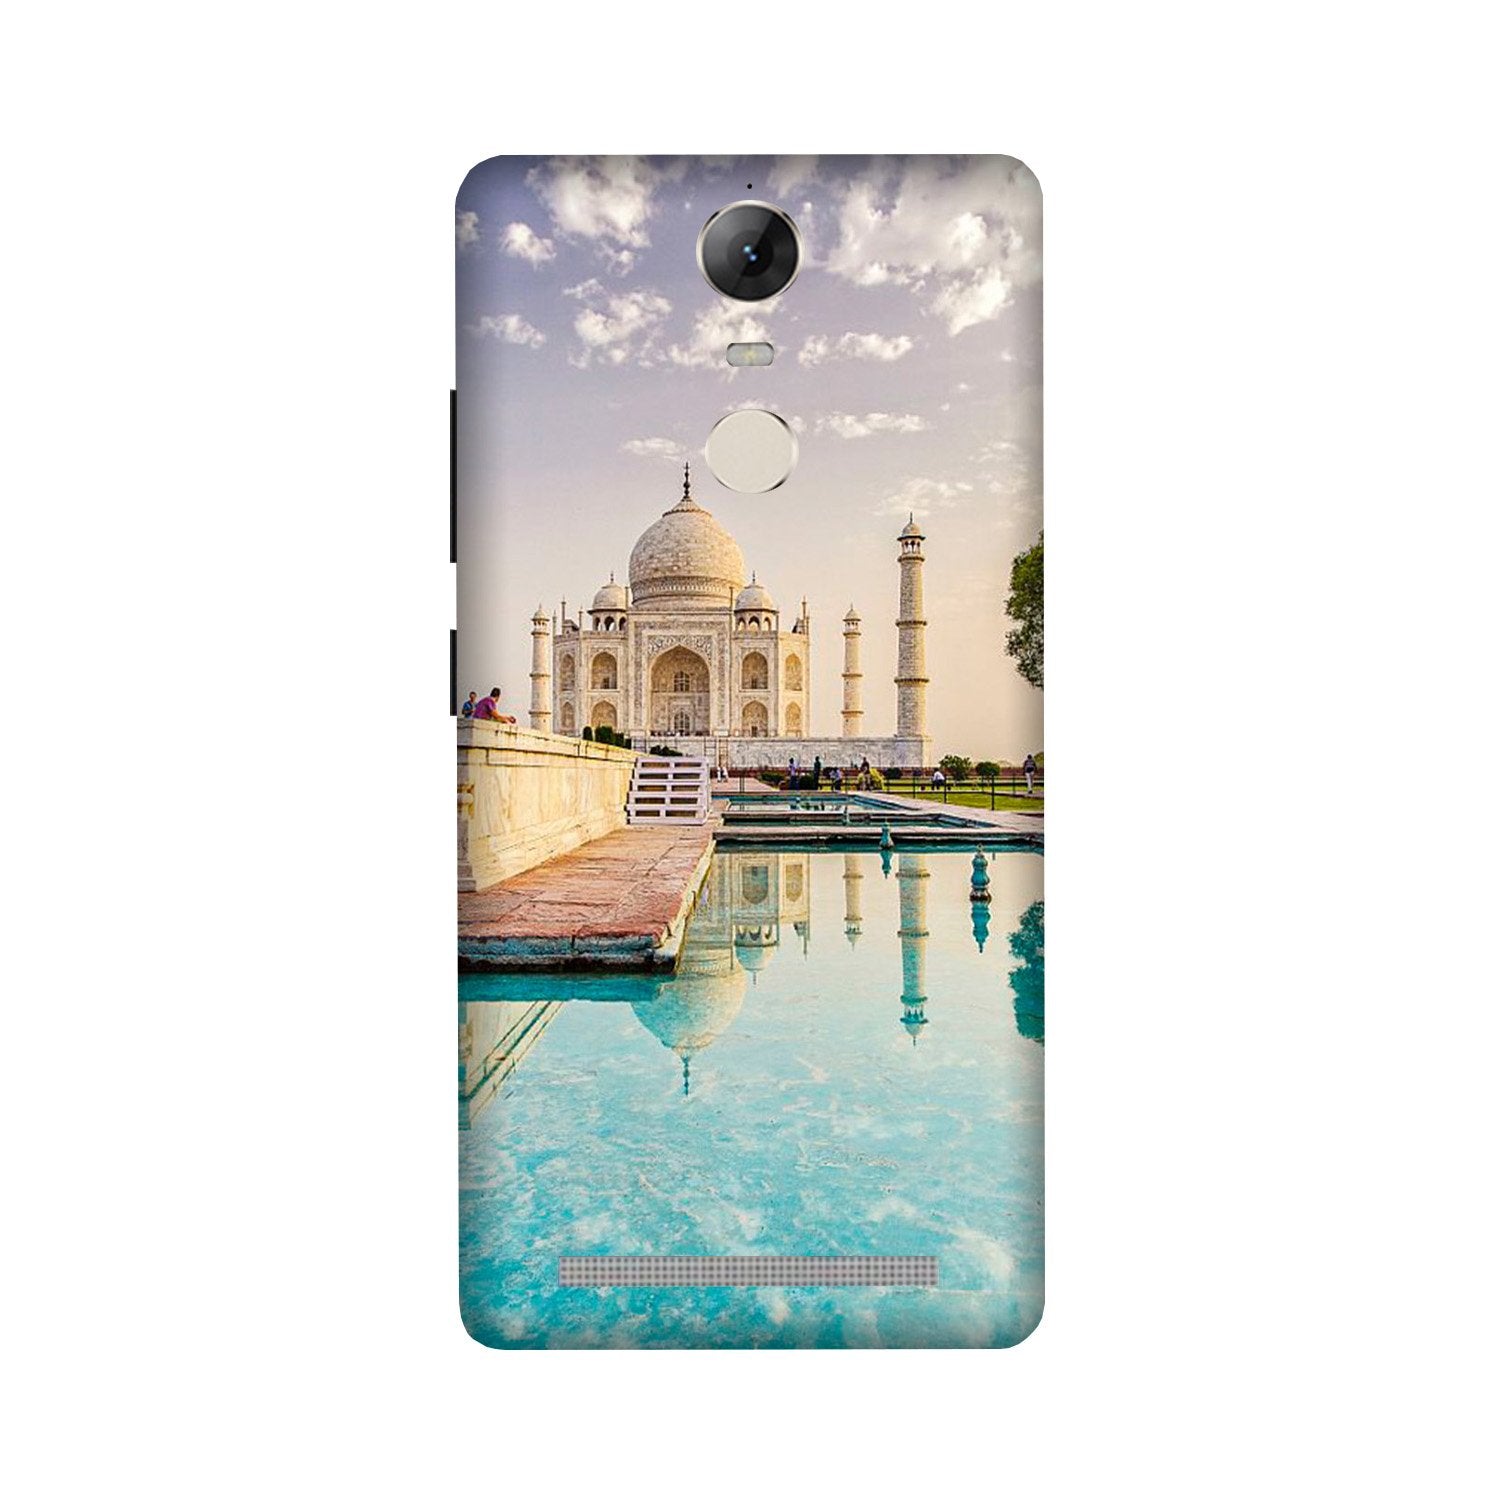 Taj Mahal Case for Lenovo Vibe K5 Note (Design No. 297)